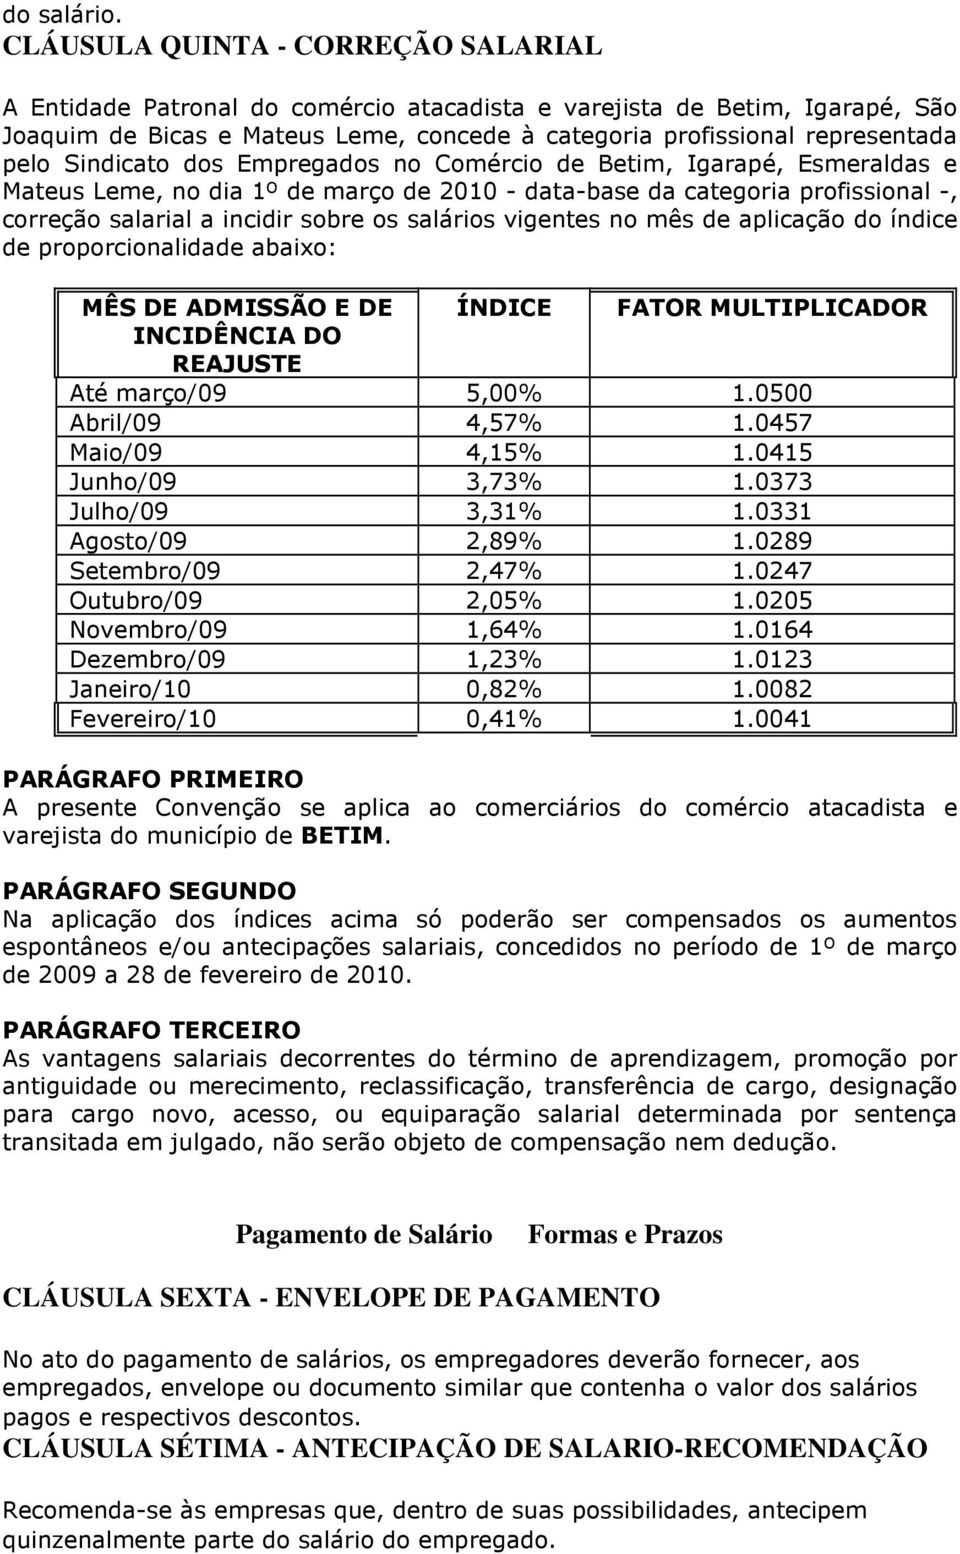 Sindicato dos Empregados no Comércio de Betim, Igarapé, Esmeraldas e Mateus Leme, no dia 1º de março de 2010 - data-base da categoria profissional -, correção salarial a incidir sobre os salários